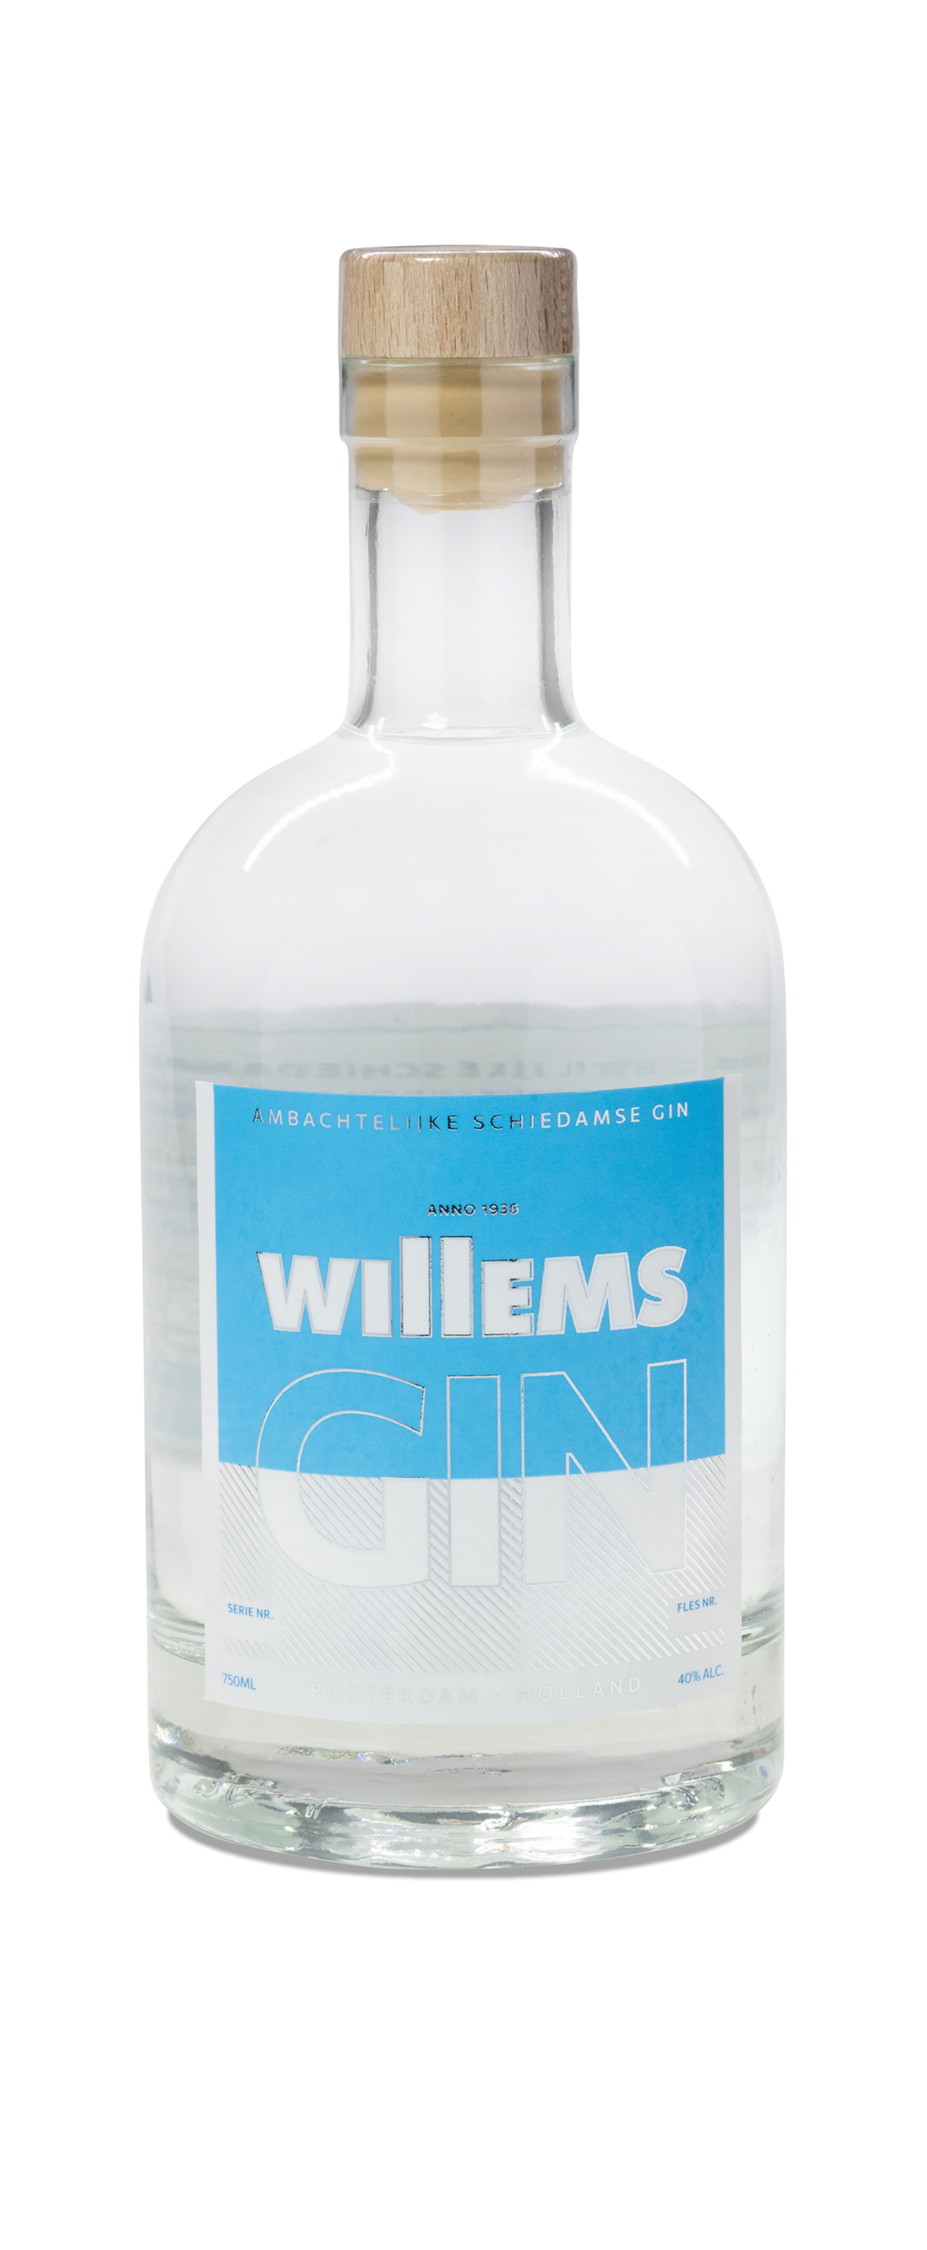 Private label fles gin met custom etiket voor Willems vastgoedonderhoud